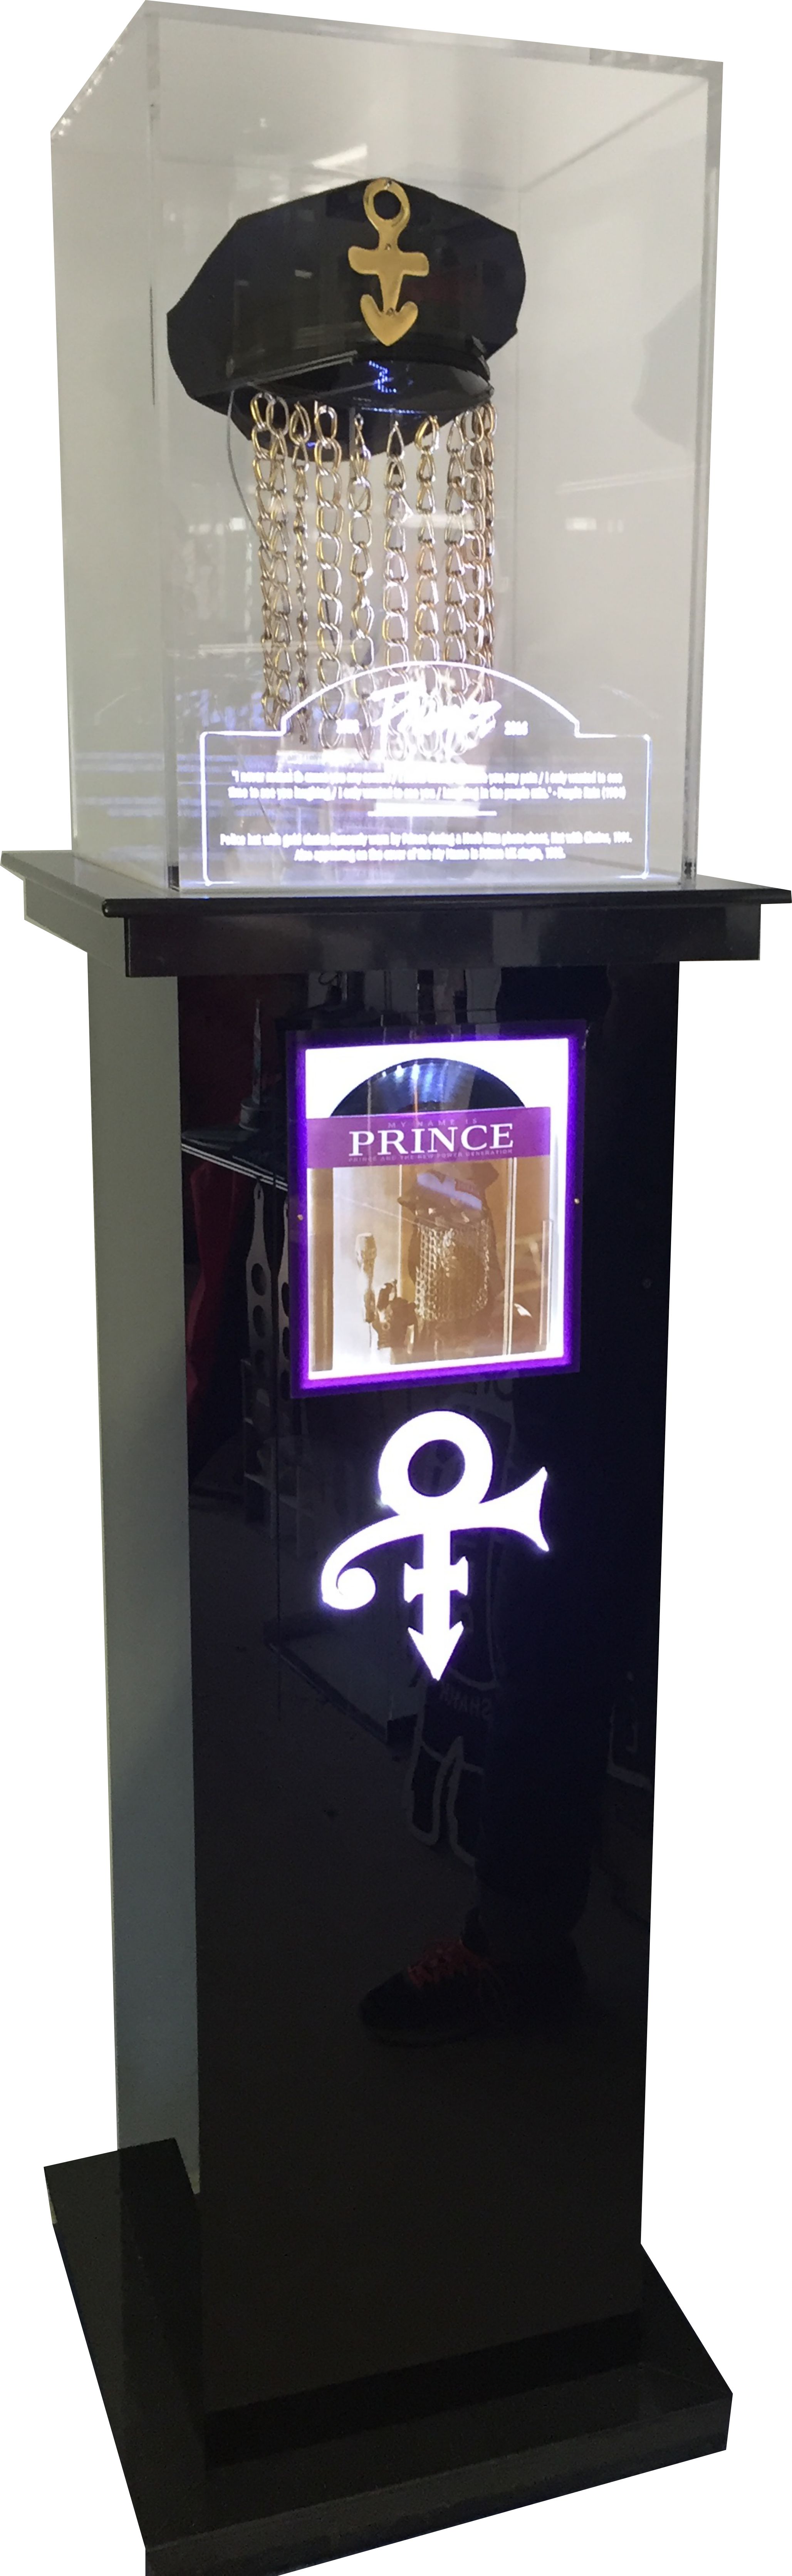 prince display.jpg